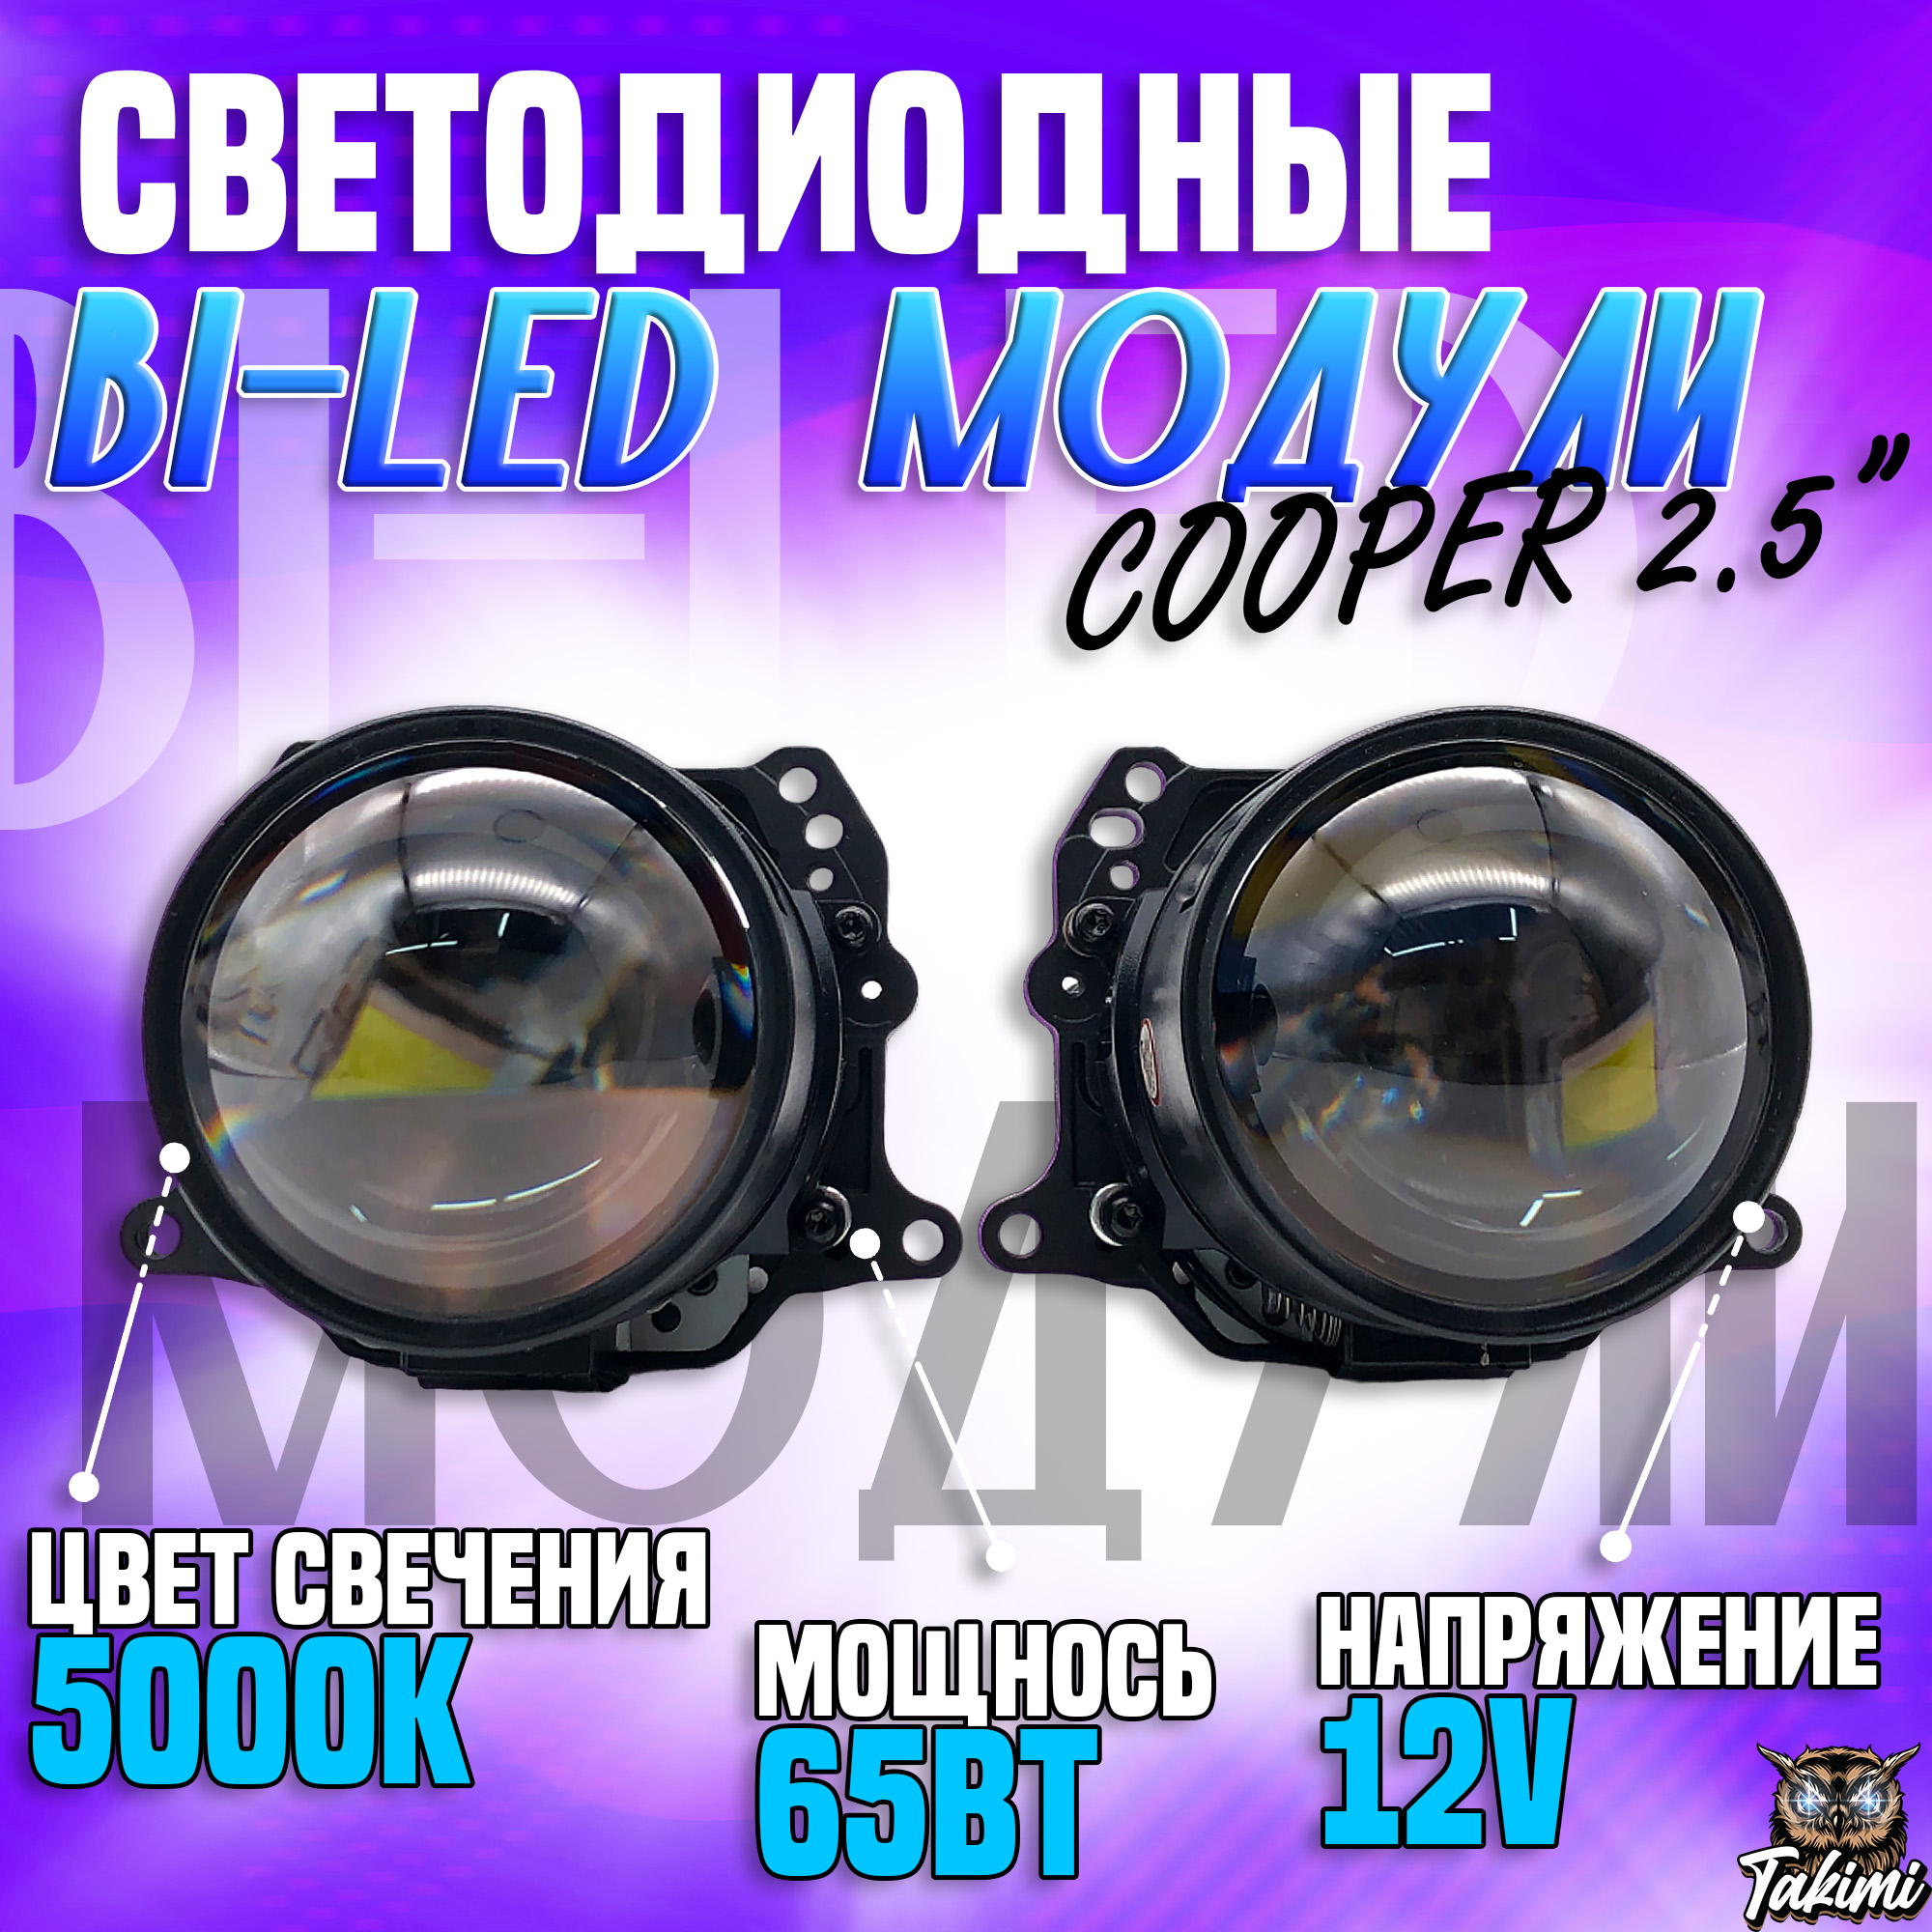 Светодиодные Bi-LED модули TaKiMi Cooper 2.5